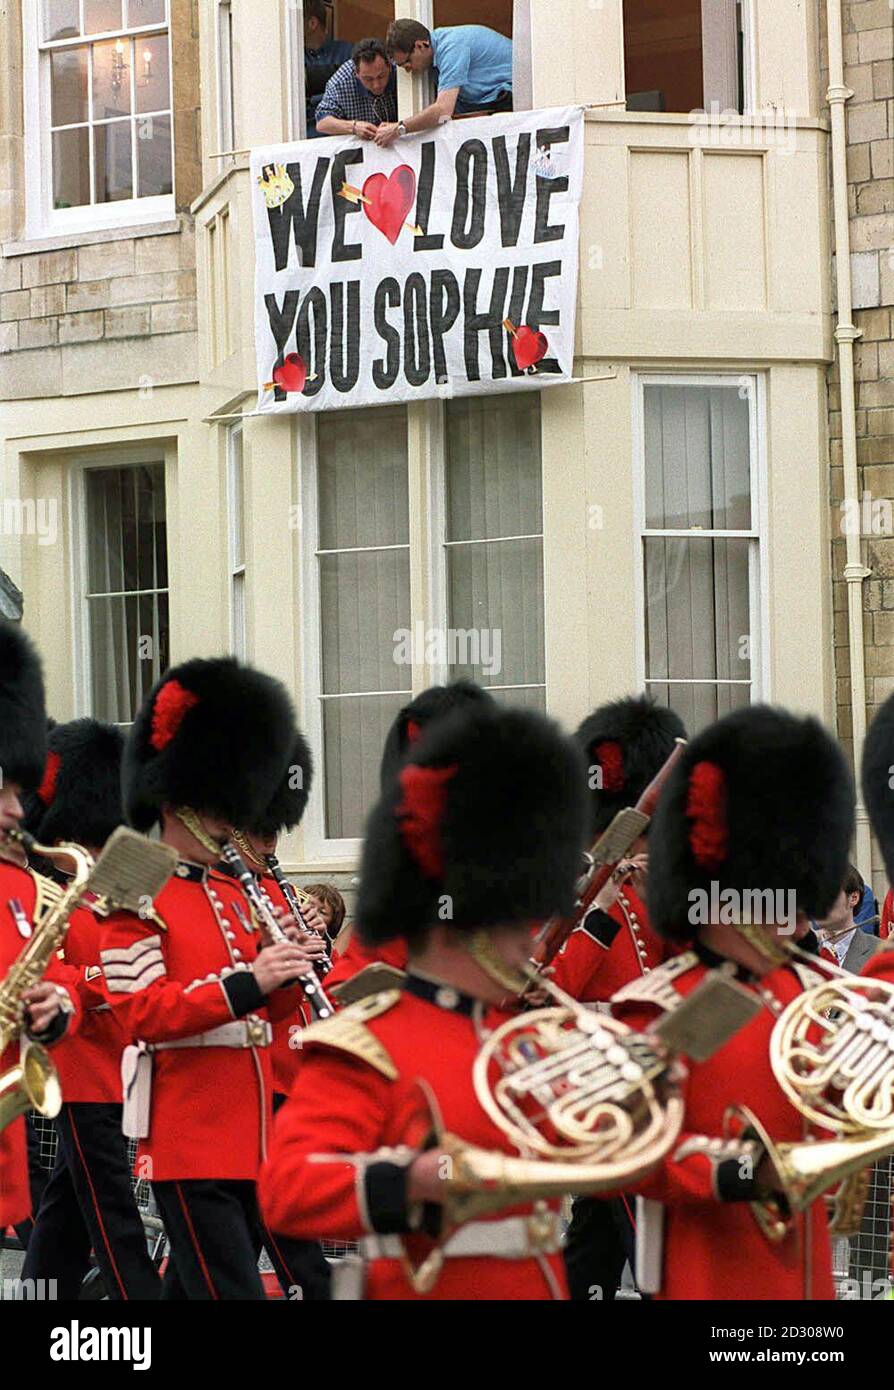 Les spectateurs font clairement comprendre leur message en accrochant une bannière à l'extérieur d'une maison près du château de Windsor, le jour du mariage de Sophie Rhys-Jones et Prince Edward, qui a reçu le titre de comte de Wessex. Banque D'Images